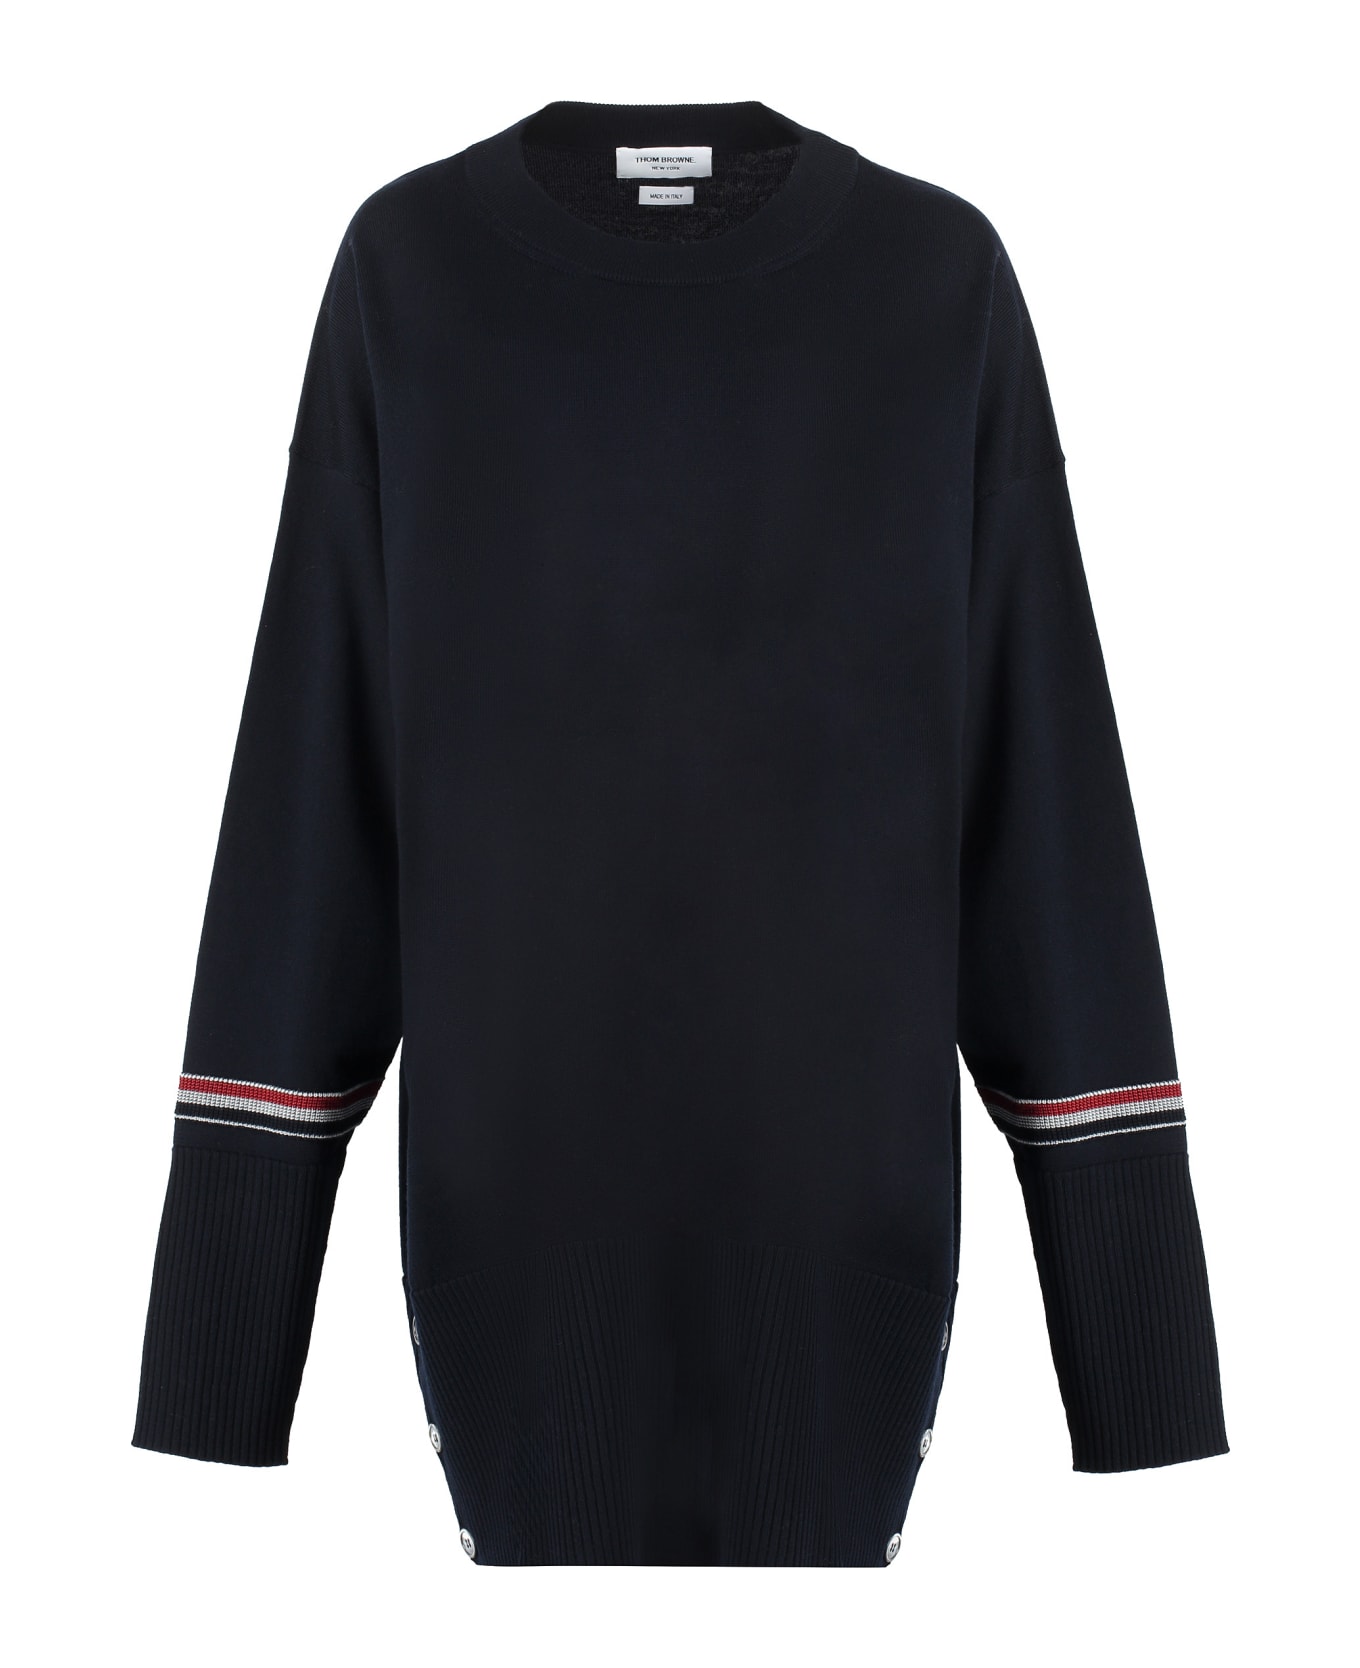 Thom Browne Merino Wool Sweater - Navy ニットウェア